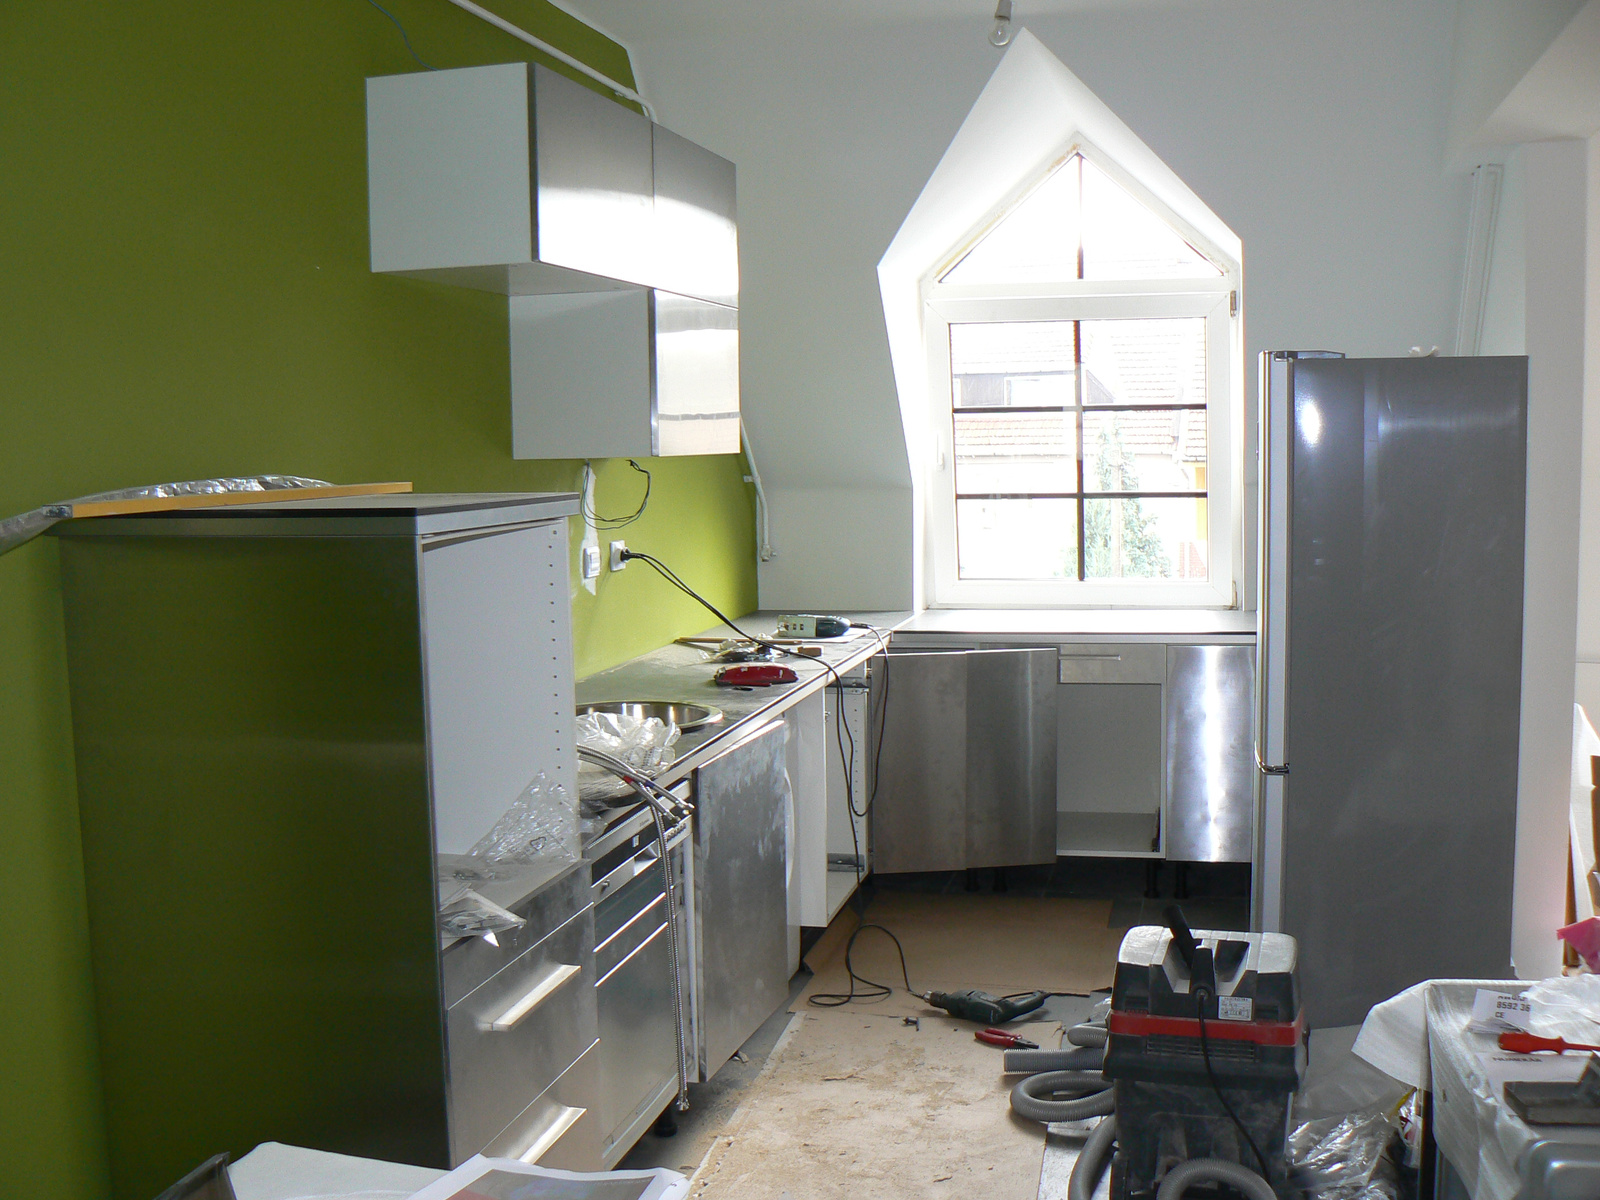 kitchen under construction